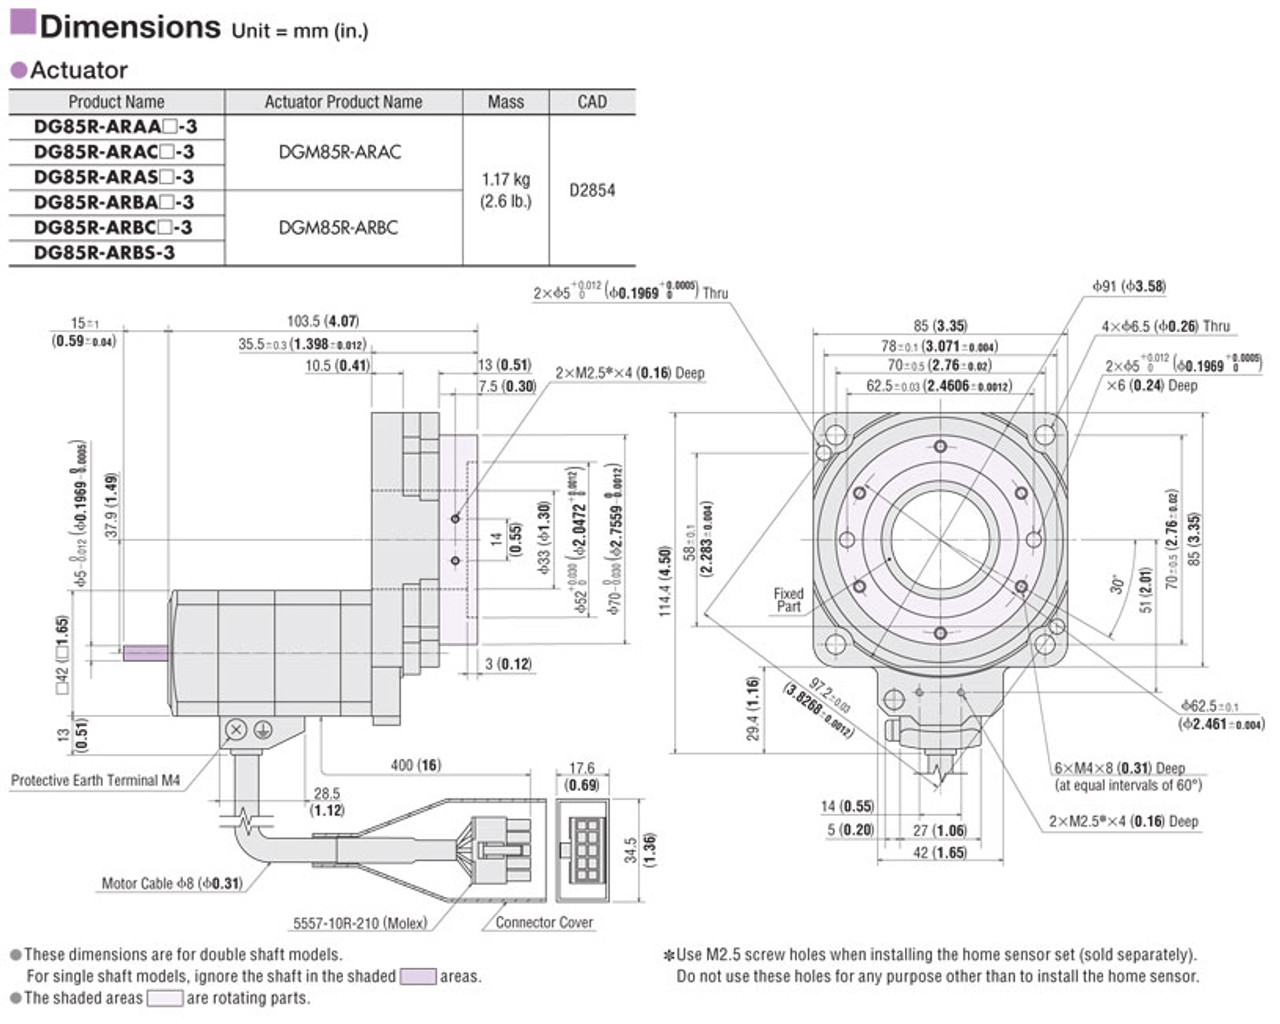 DGM85R-ARBC / ARD-S - Dimensions